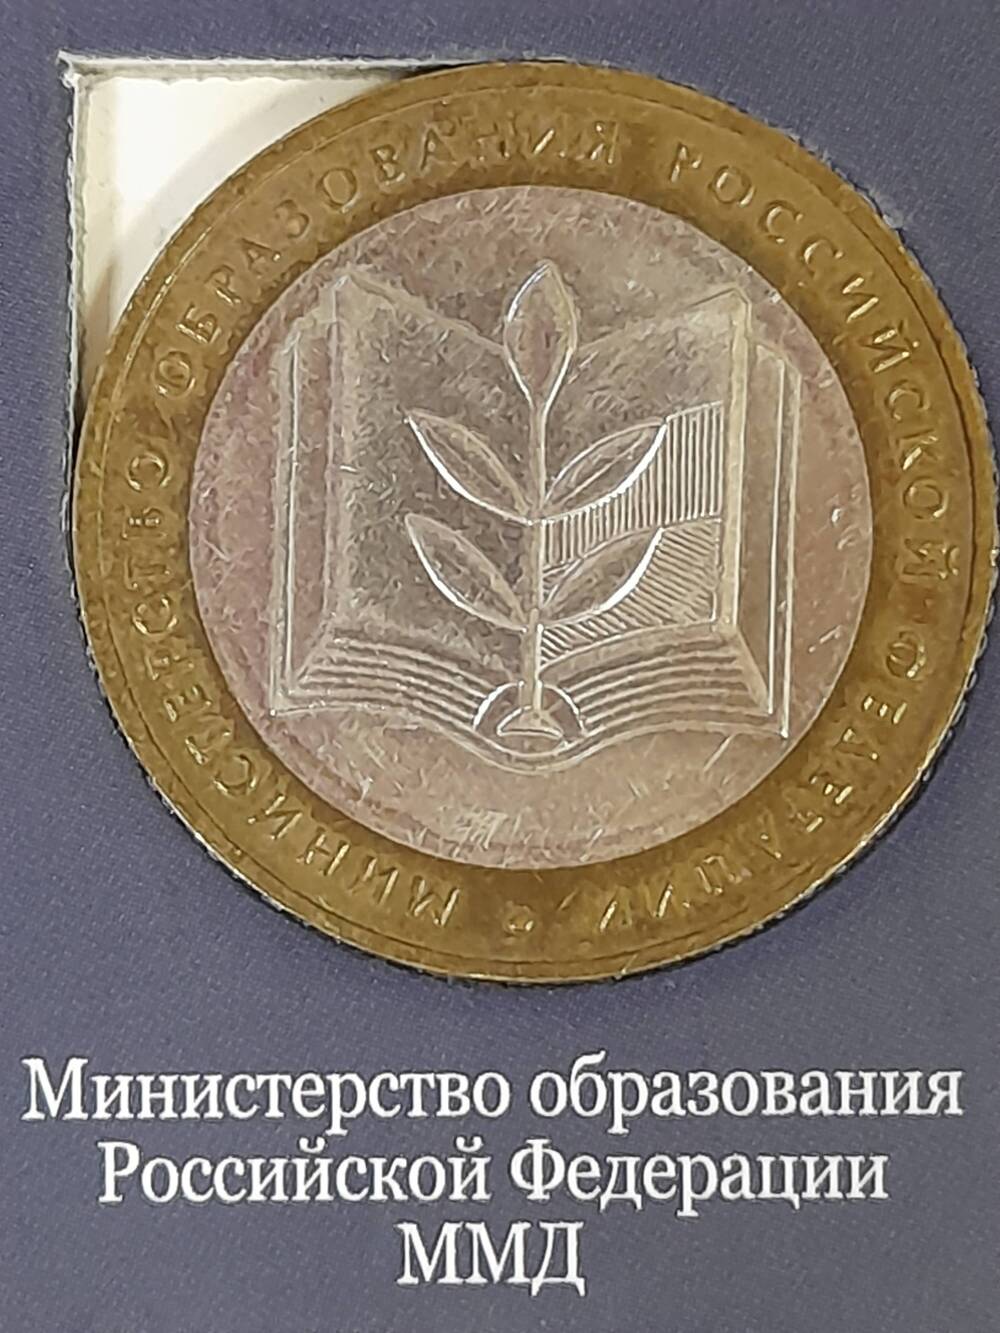 Монета памятная 10 РУБЛЕЙ. Министерство образования Российской Федерации 2002 г. Россия